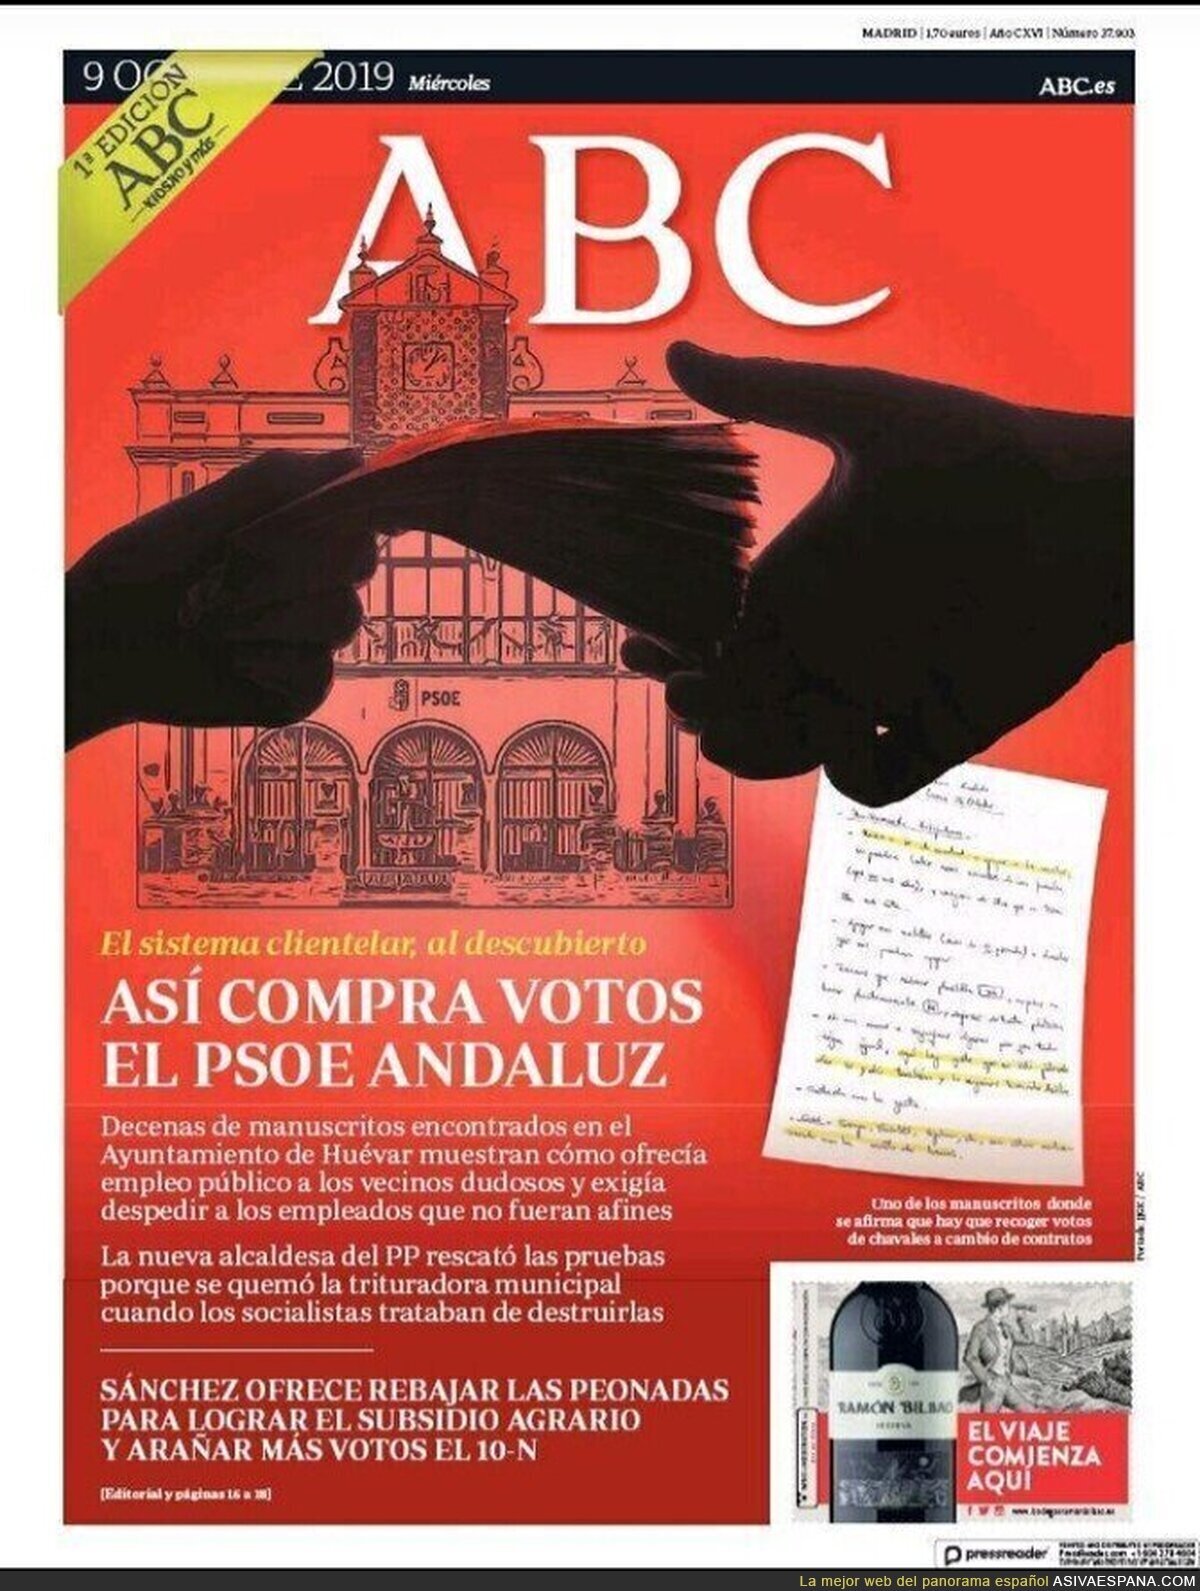 ABC demonta una red de compra fe votos del PSOE